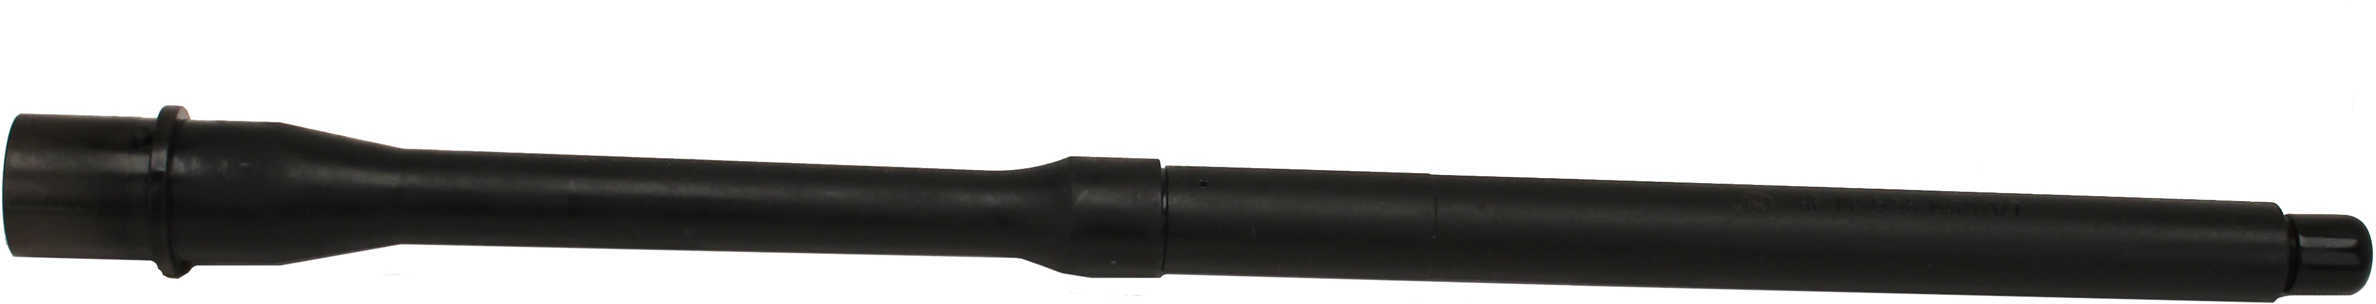 FN Bbl AR15 5.56 16 Carbine Length Gas Port